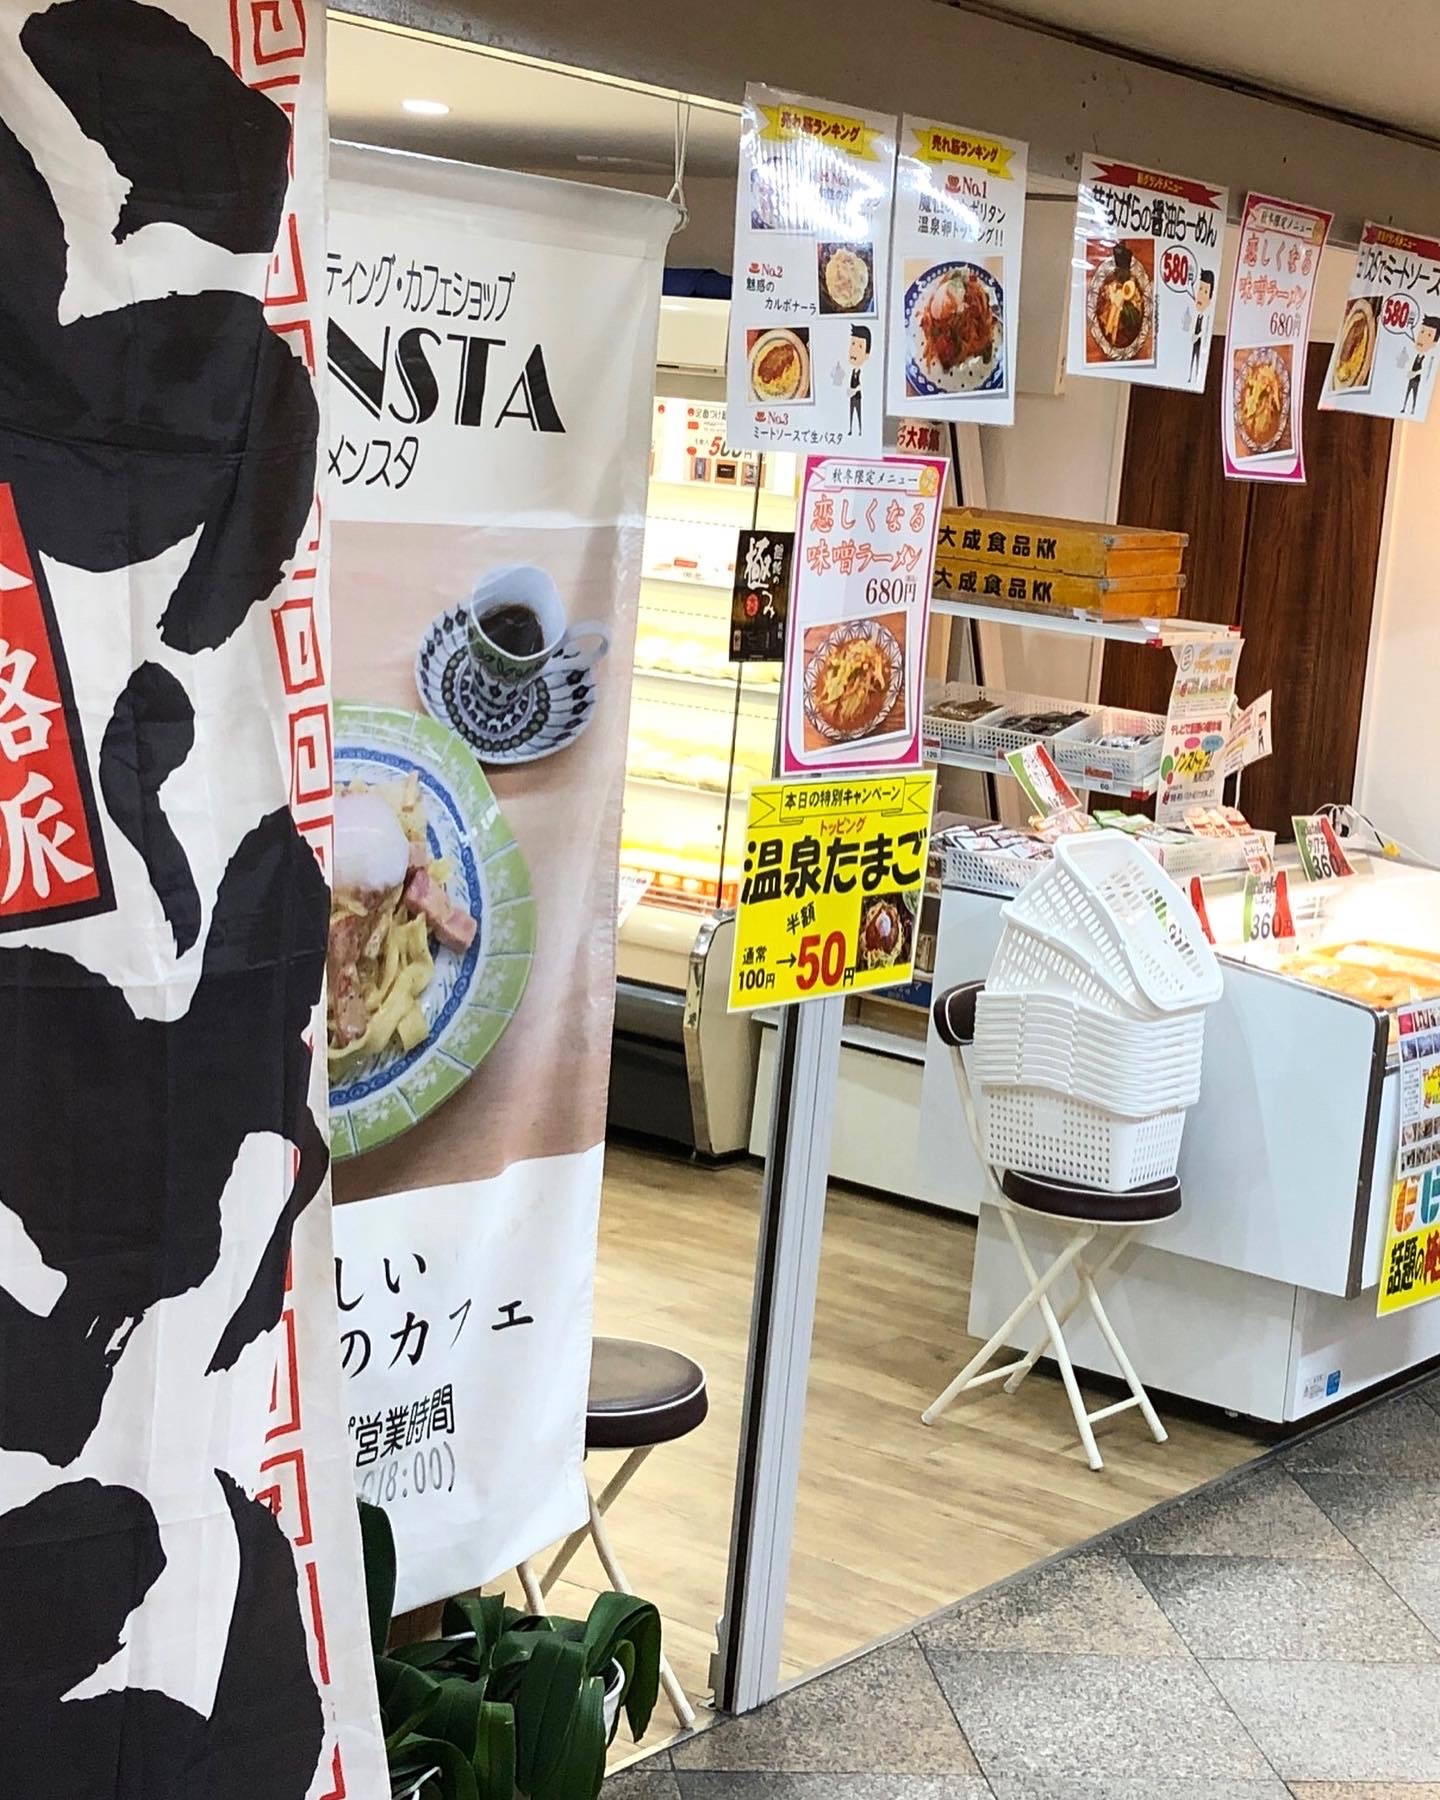 麺テイスティング・カフェショップ MENSTA外装